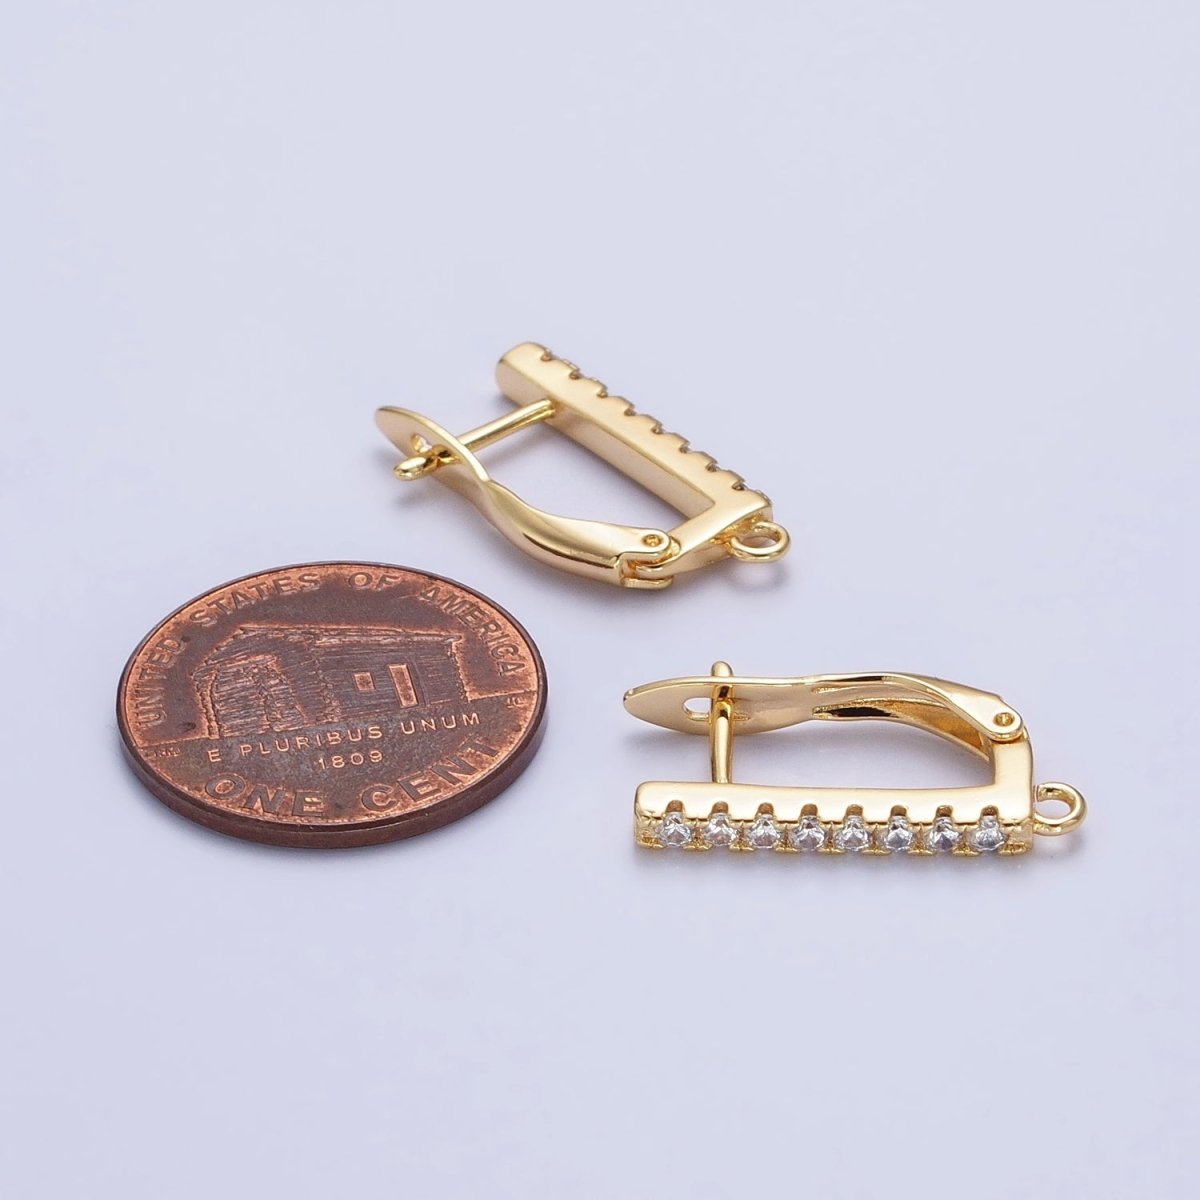 CZ Gold Huggie Earring one touch w/ open link Gold / Silver Earring Lever back earring making Supply Z-163 Z-164 - DLUXCA